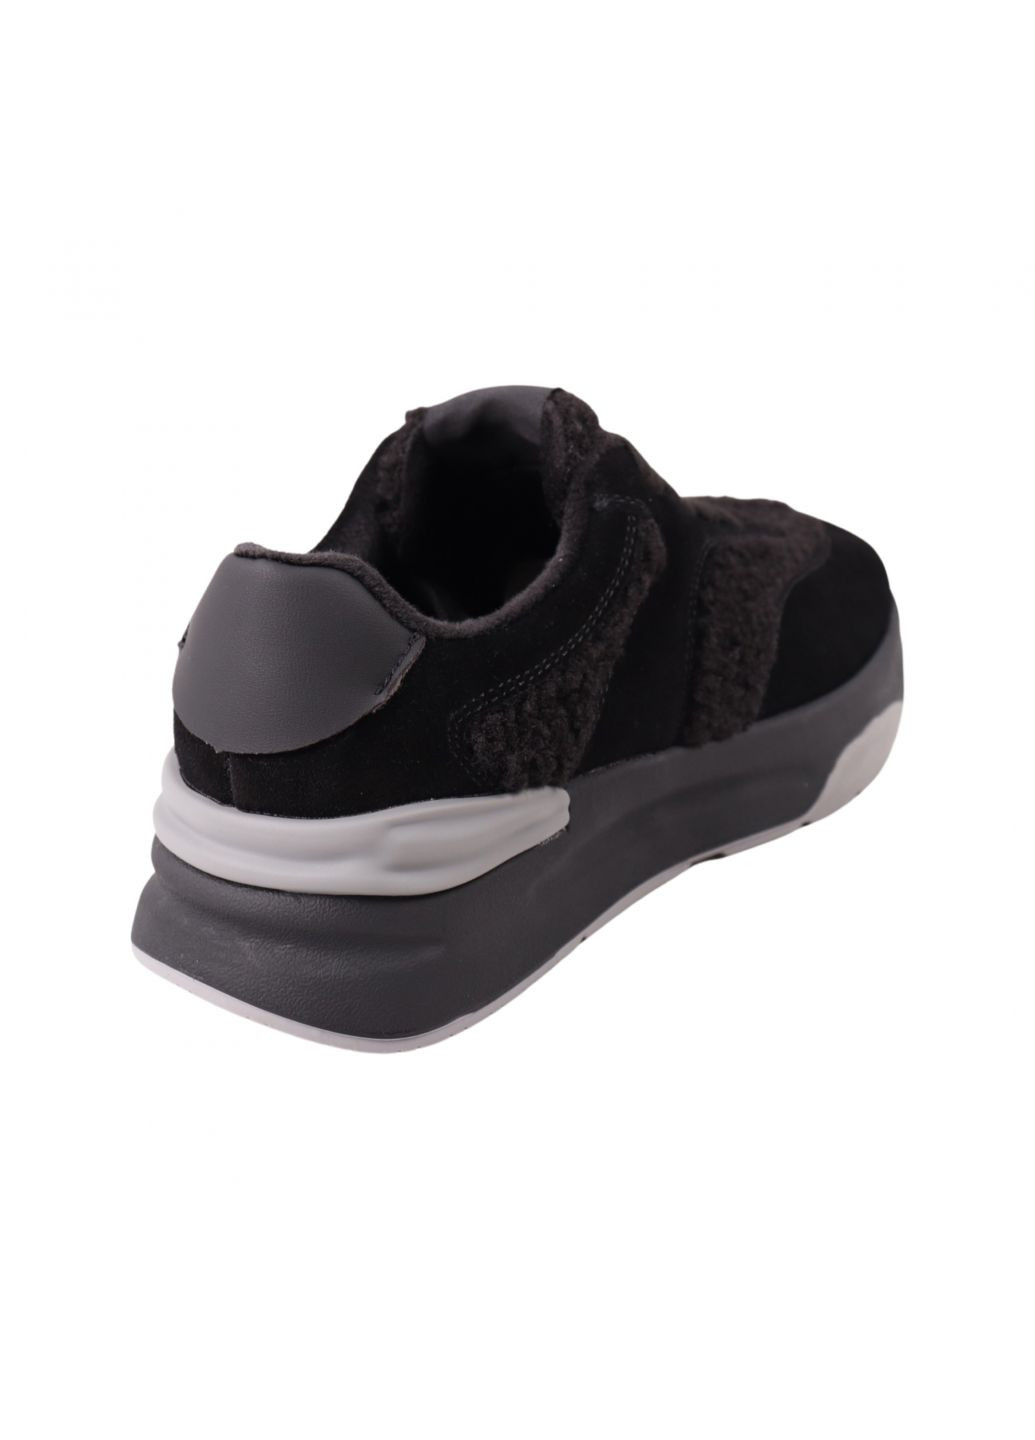 Чорні кросівки жіночі чорні натуральна замша Lifexpert 1428-23DK